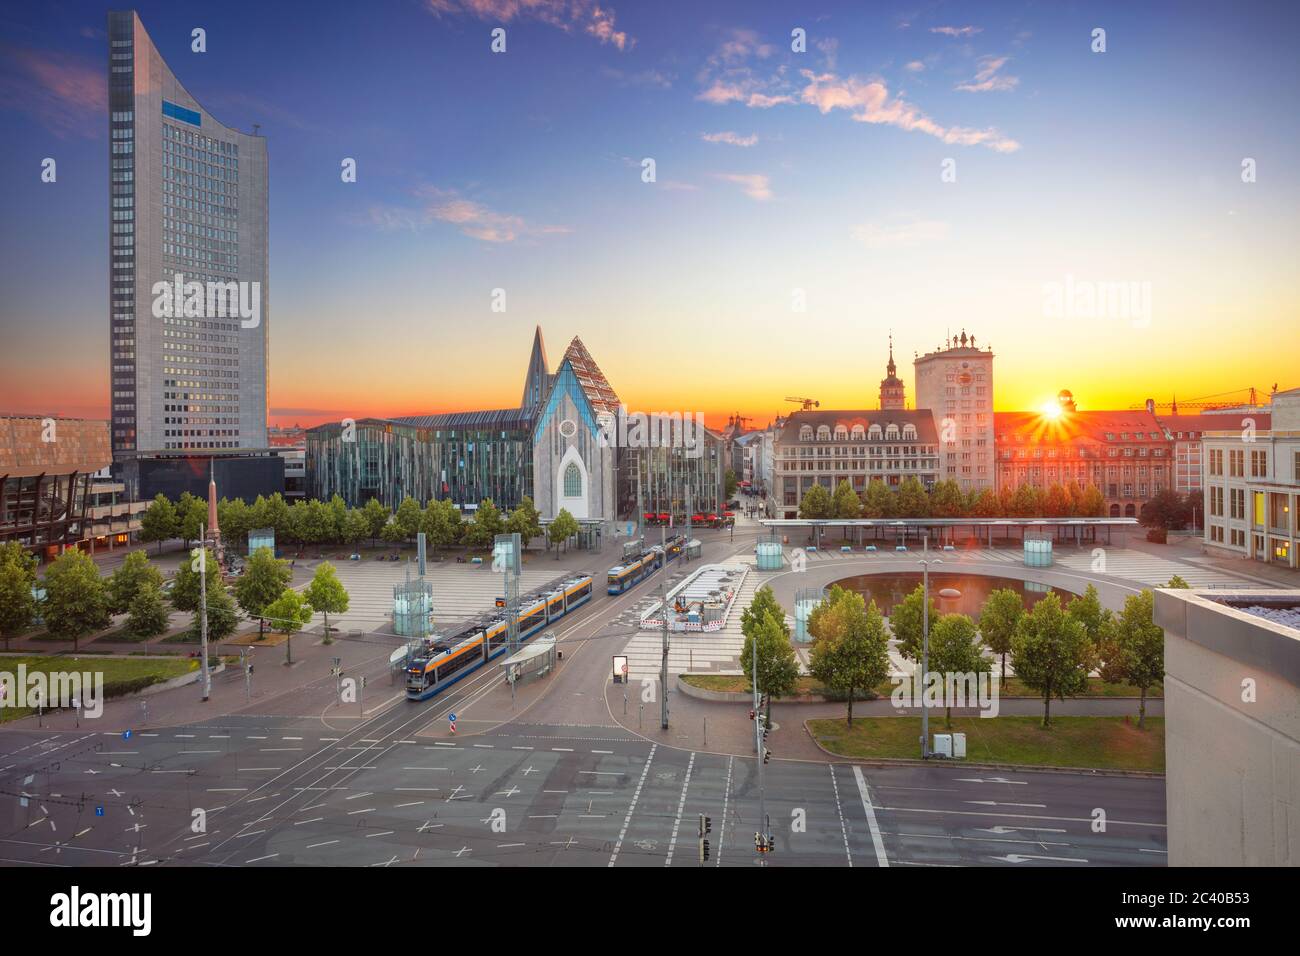 Leipzig, Alemania. Imagen del paisaje urbano del centro de Leipzig durante la hermosa puesta de sol. Foto de stock